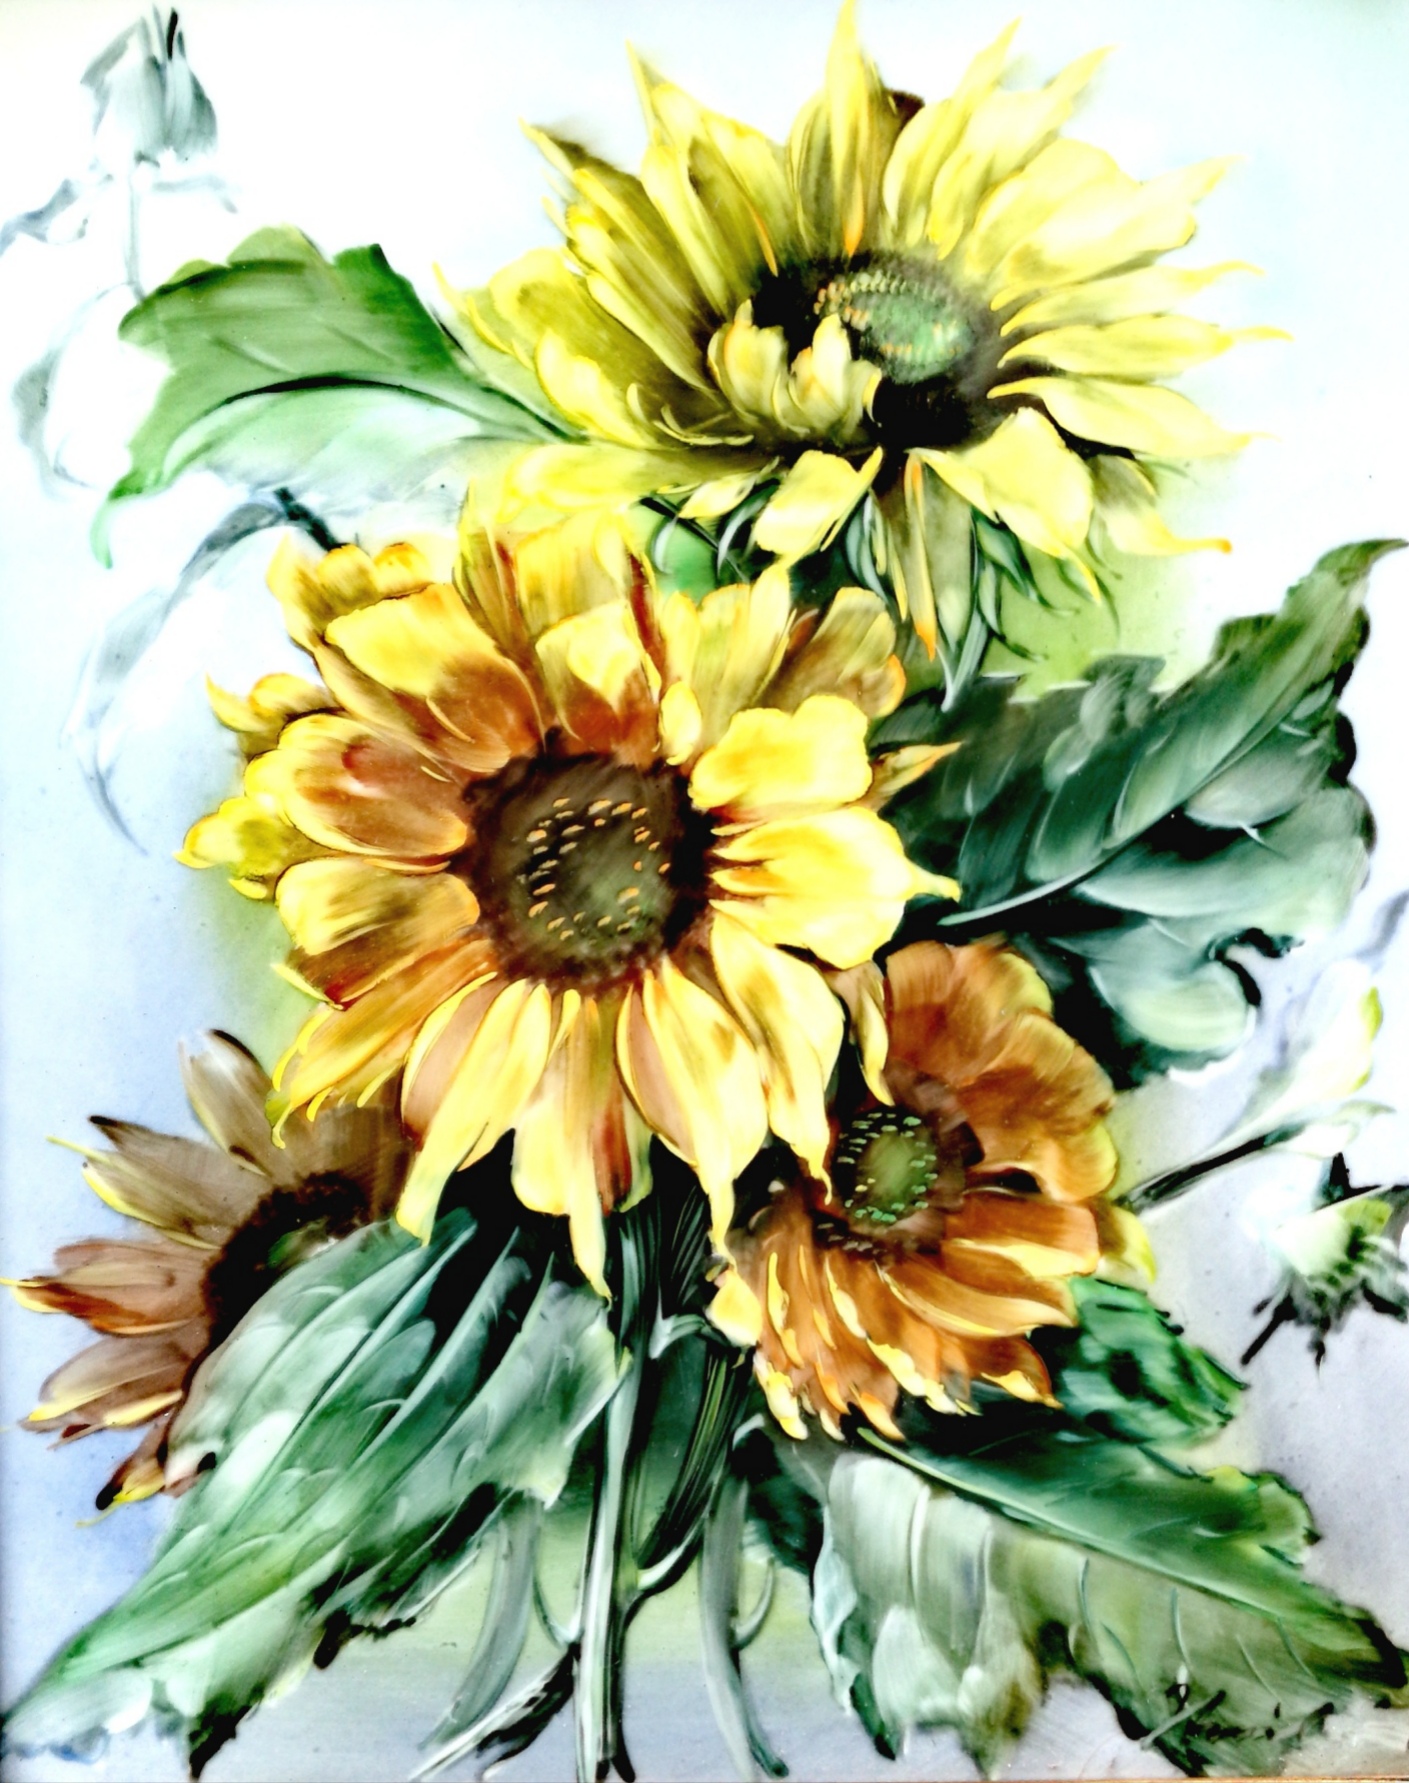 Rosenthal, Sonnenblumen, handgemalt